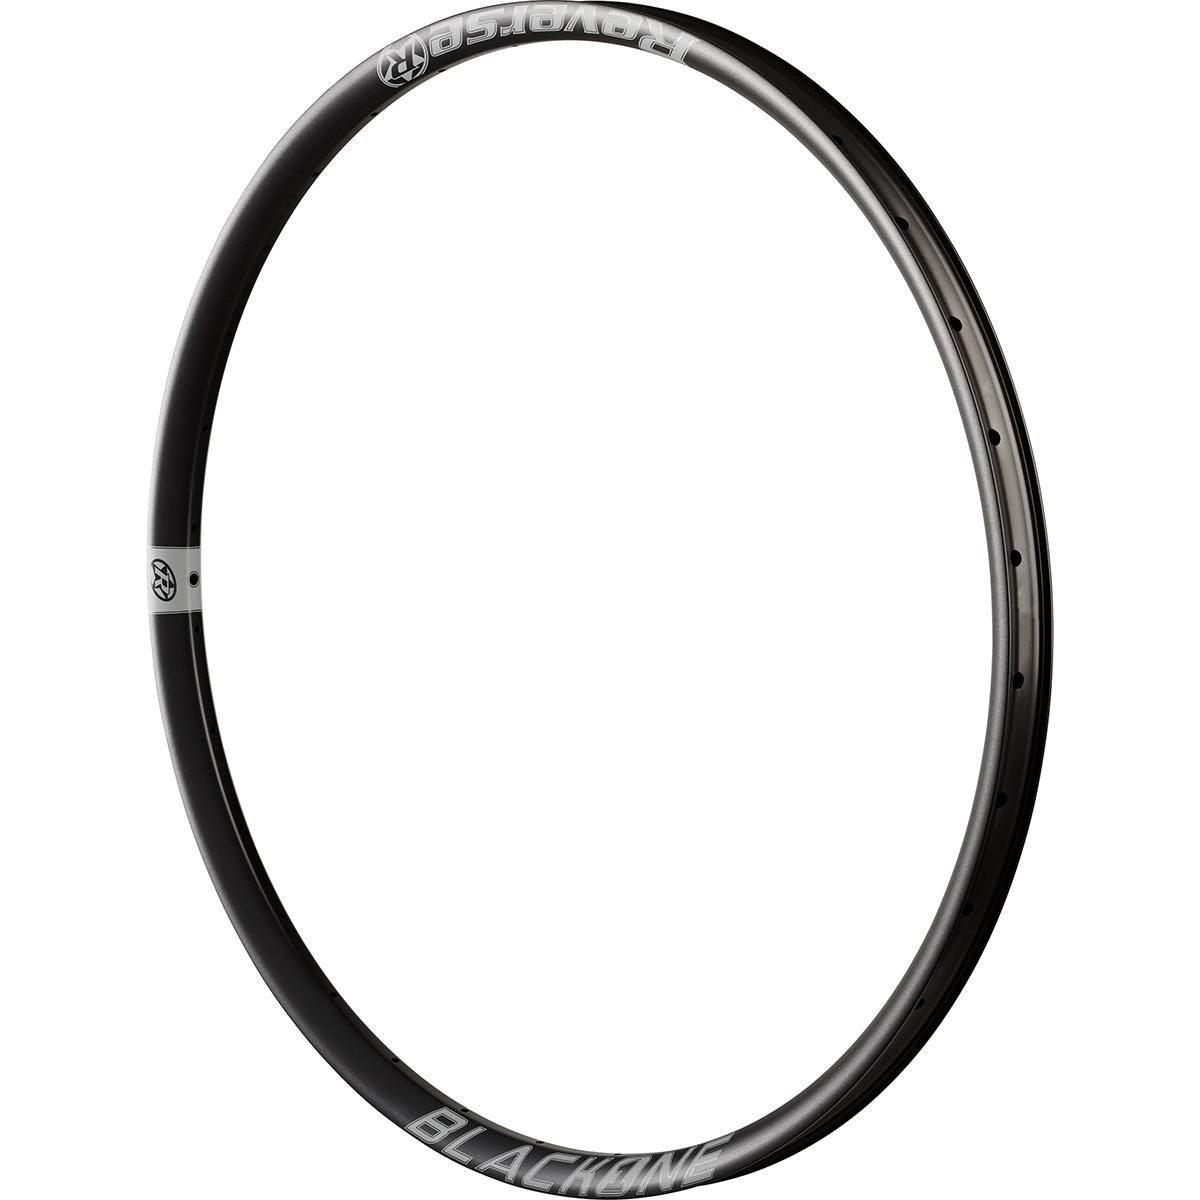 Reverse Components Cerchio MTB Black One Nero/Grigio, 27.5 Pollici x 30 mm, Alluminio